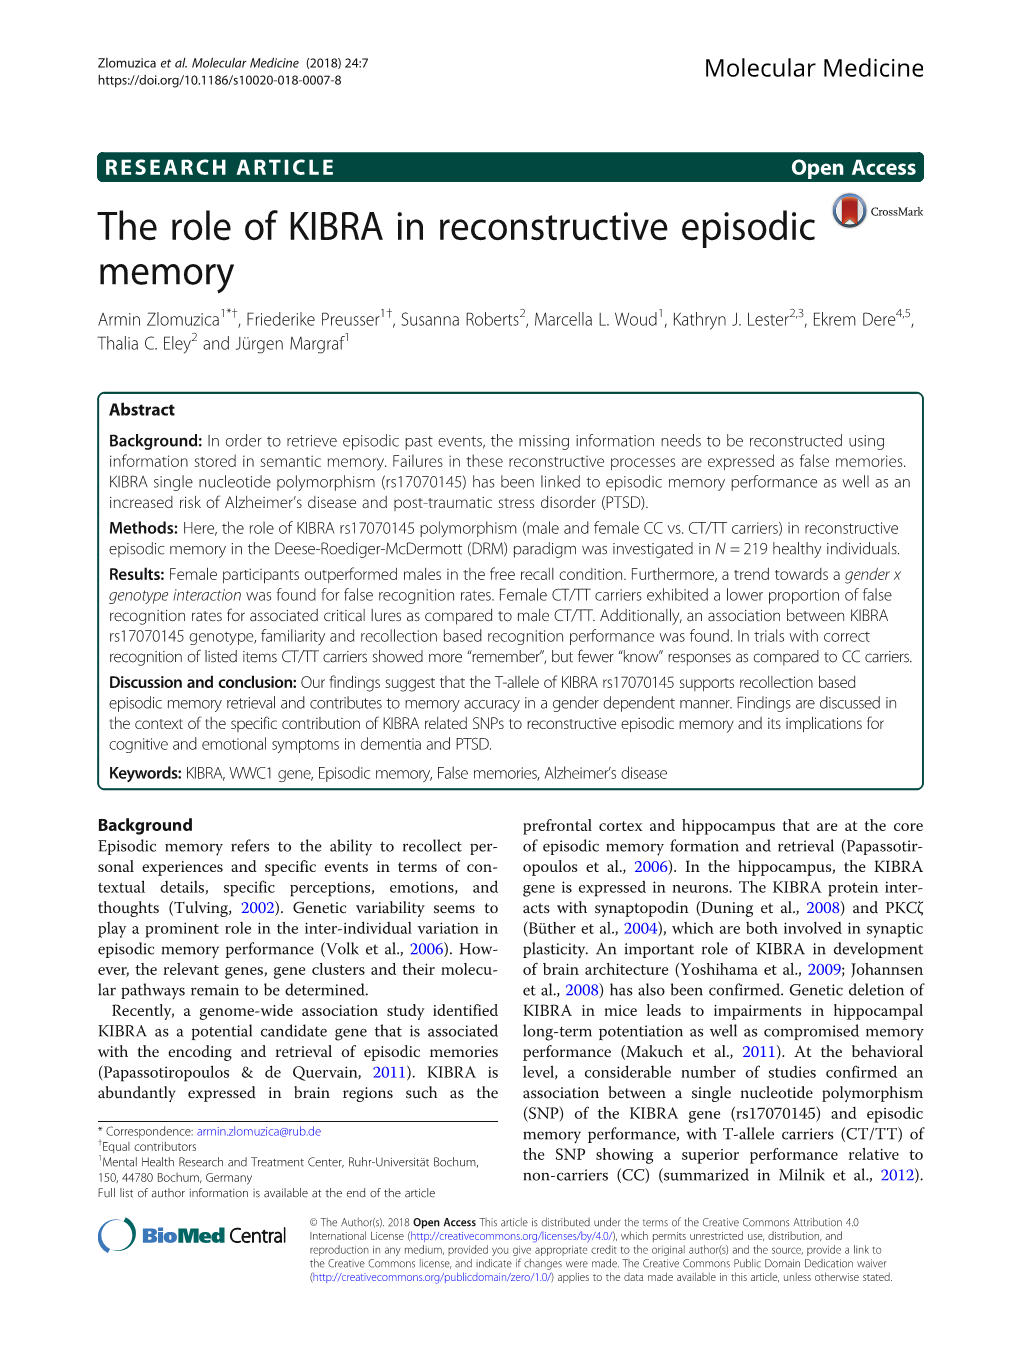 The Role of KIBRA in Reconstructive Episodic Memory Armin Zlomuzica1*†, Friederike Preusser1†, Susanna Roberts2, Marcella L